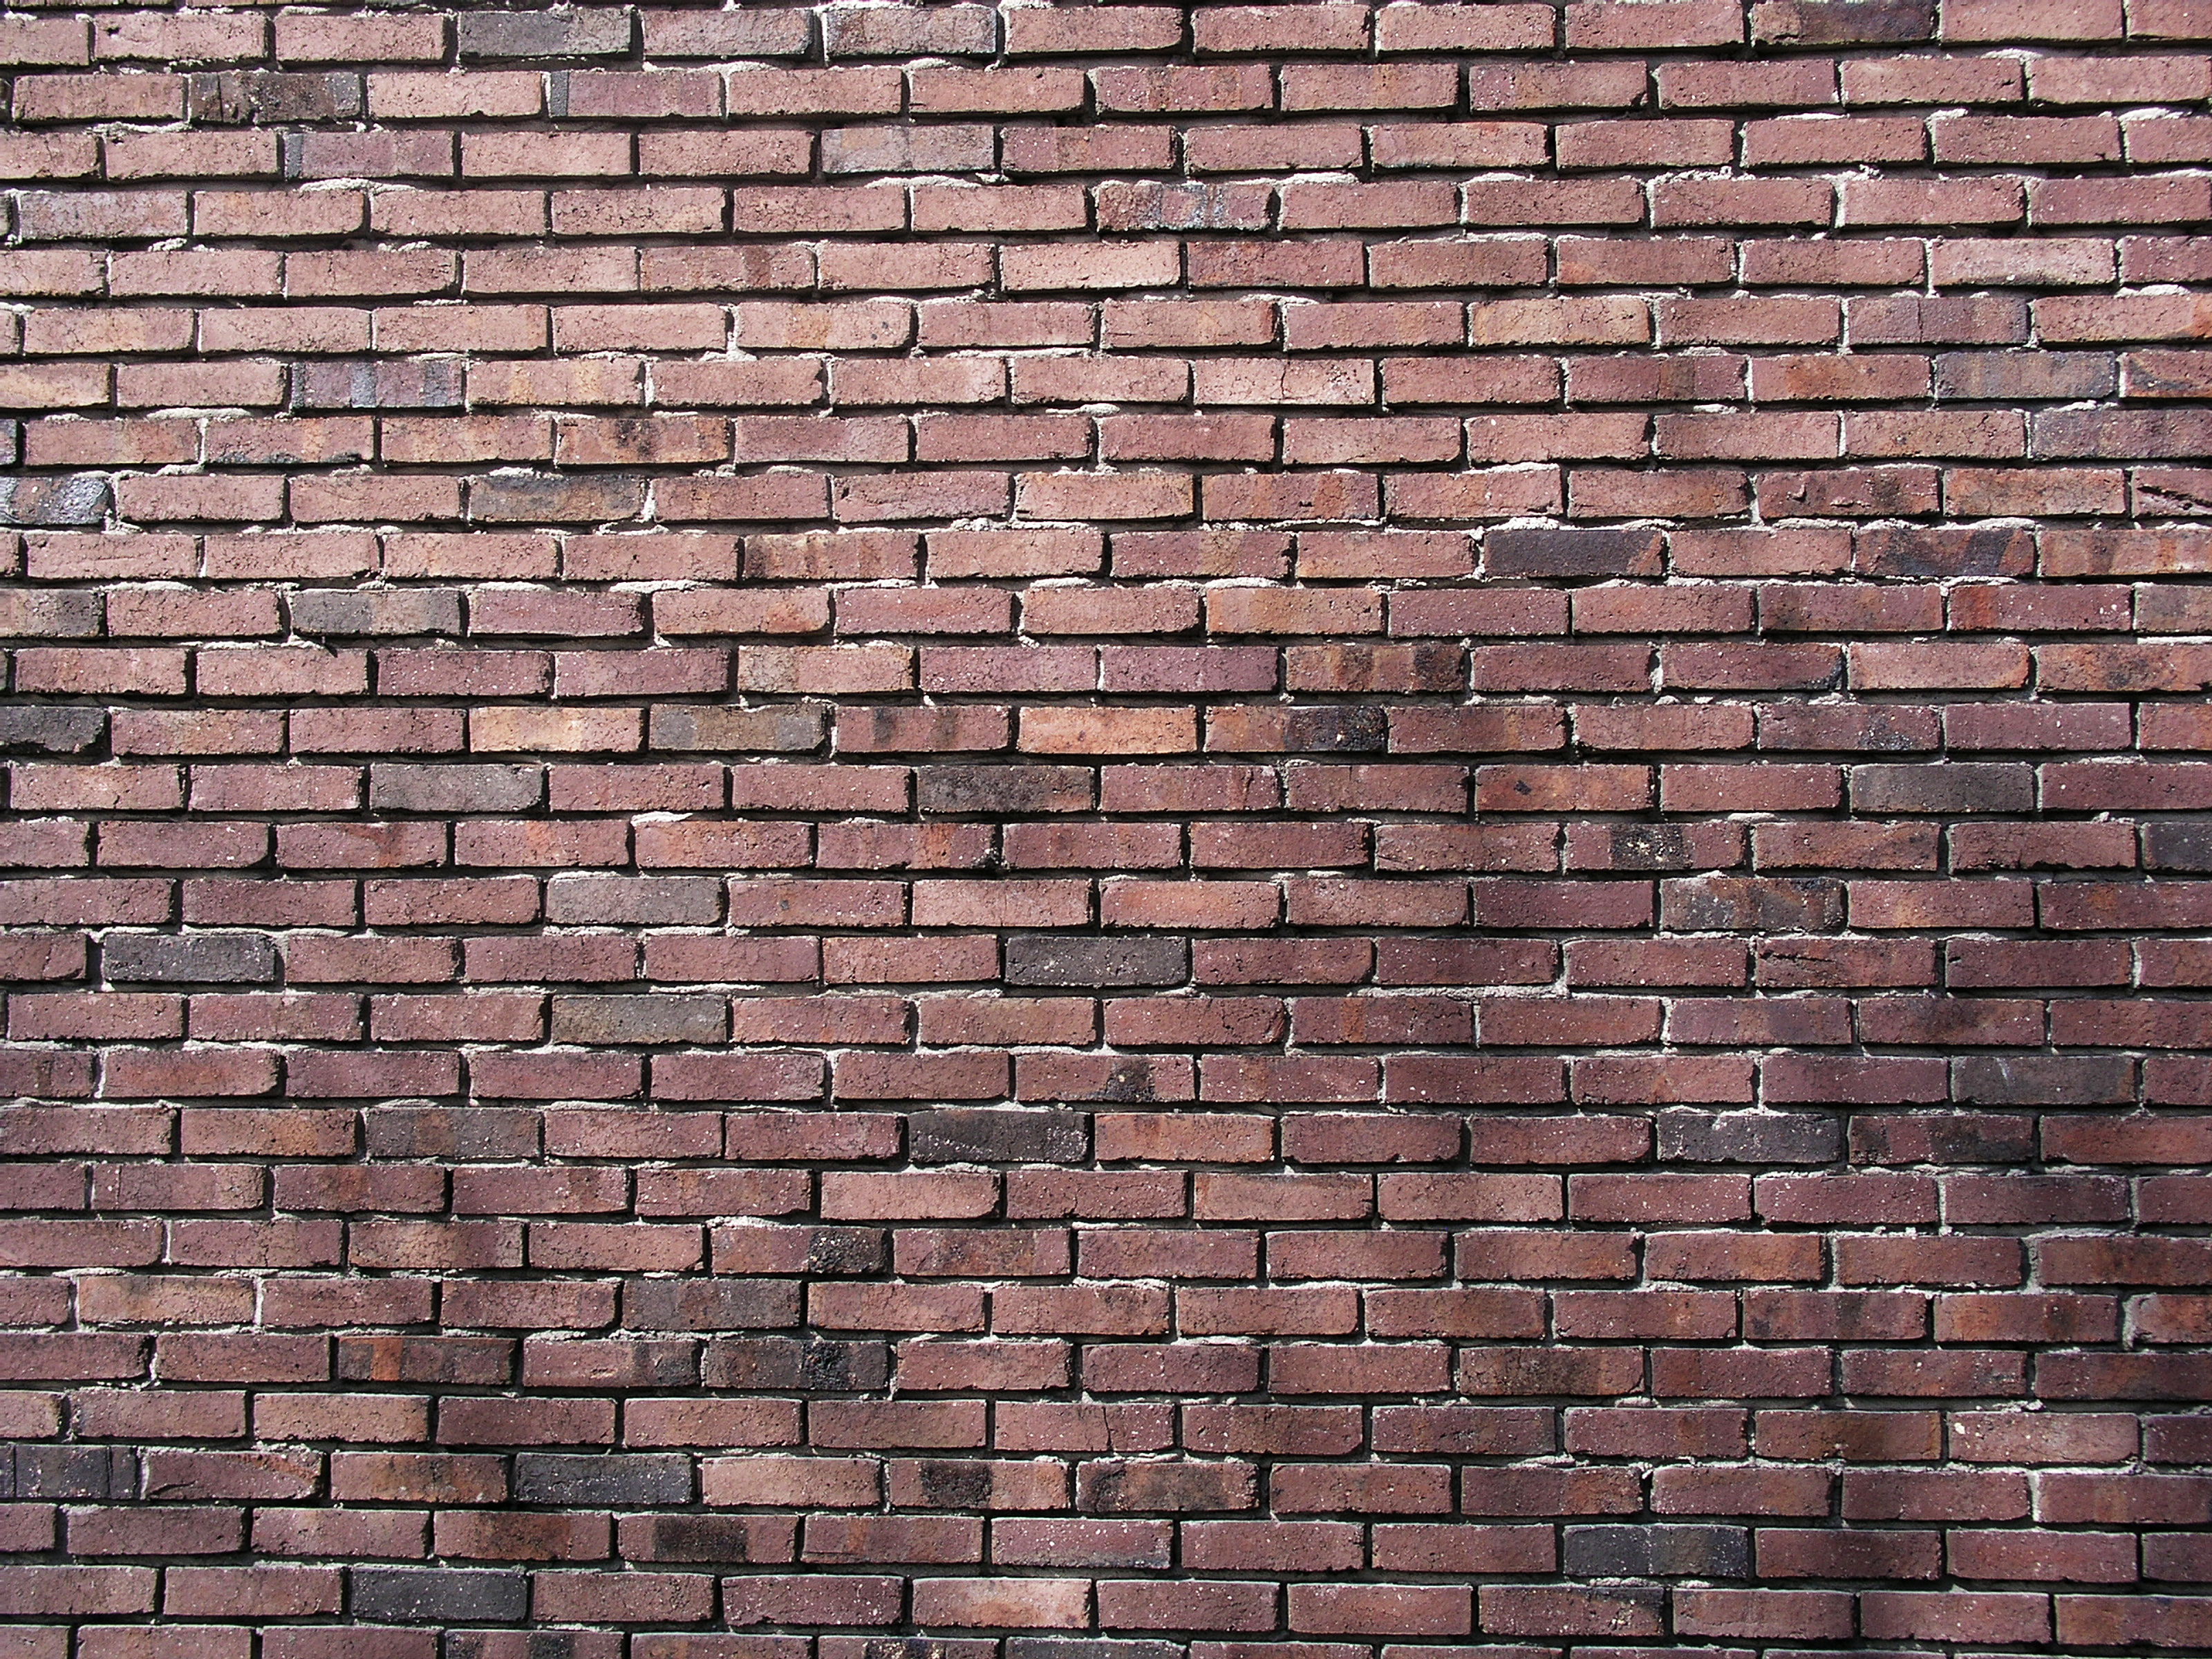 Brick Wall Images